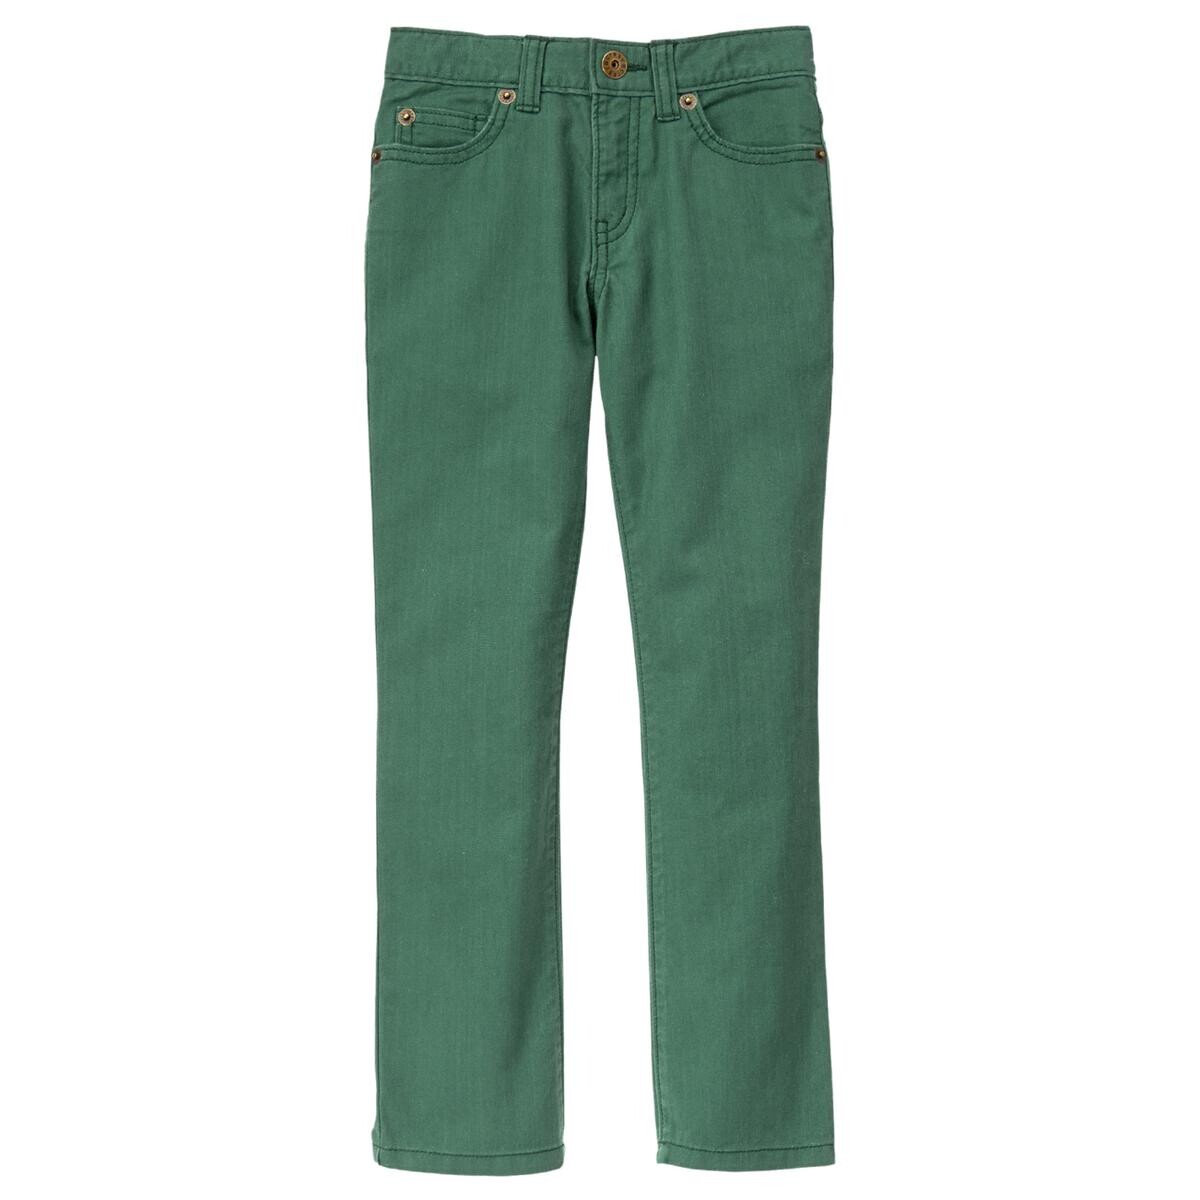 Jean pantalon rocker green 